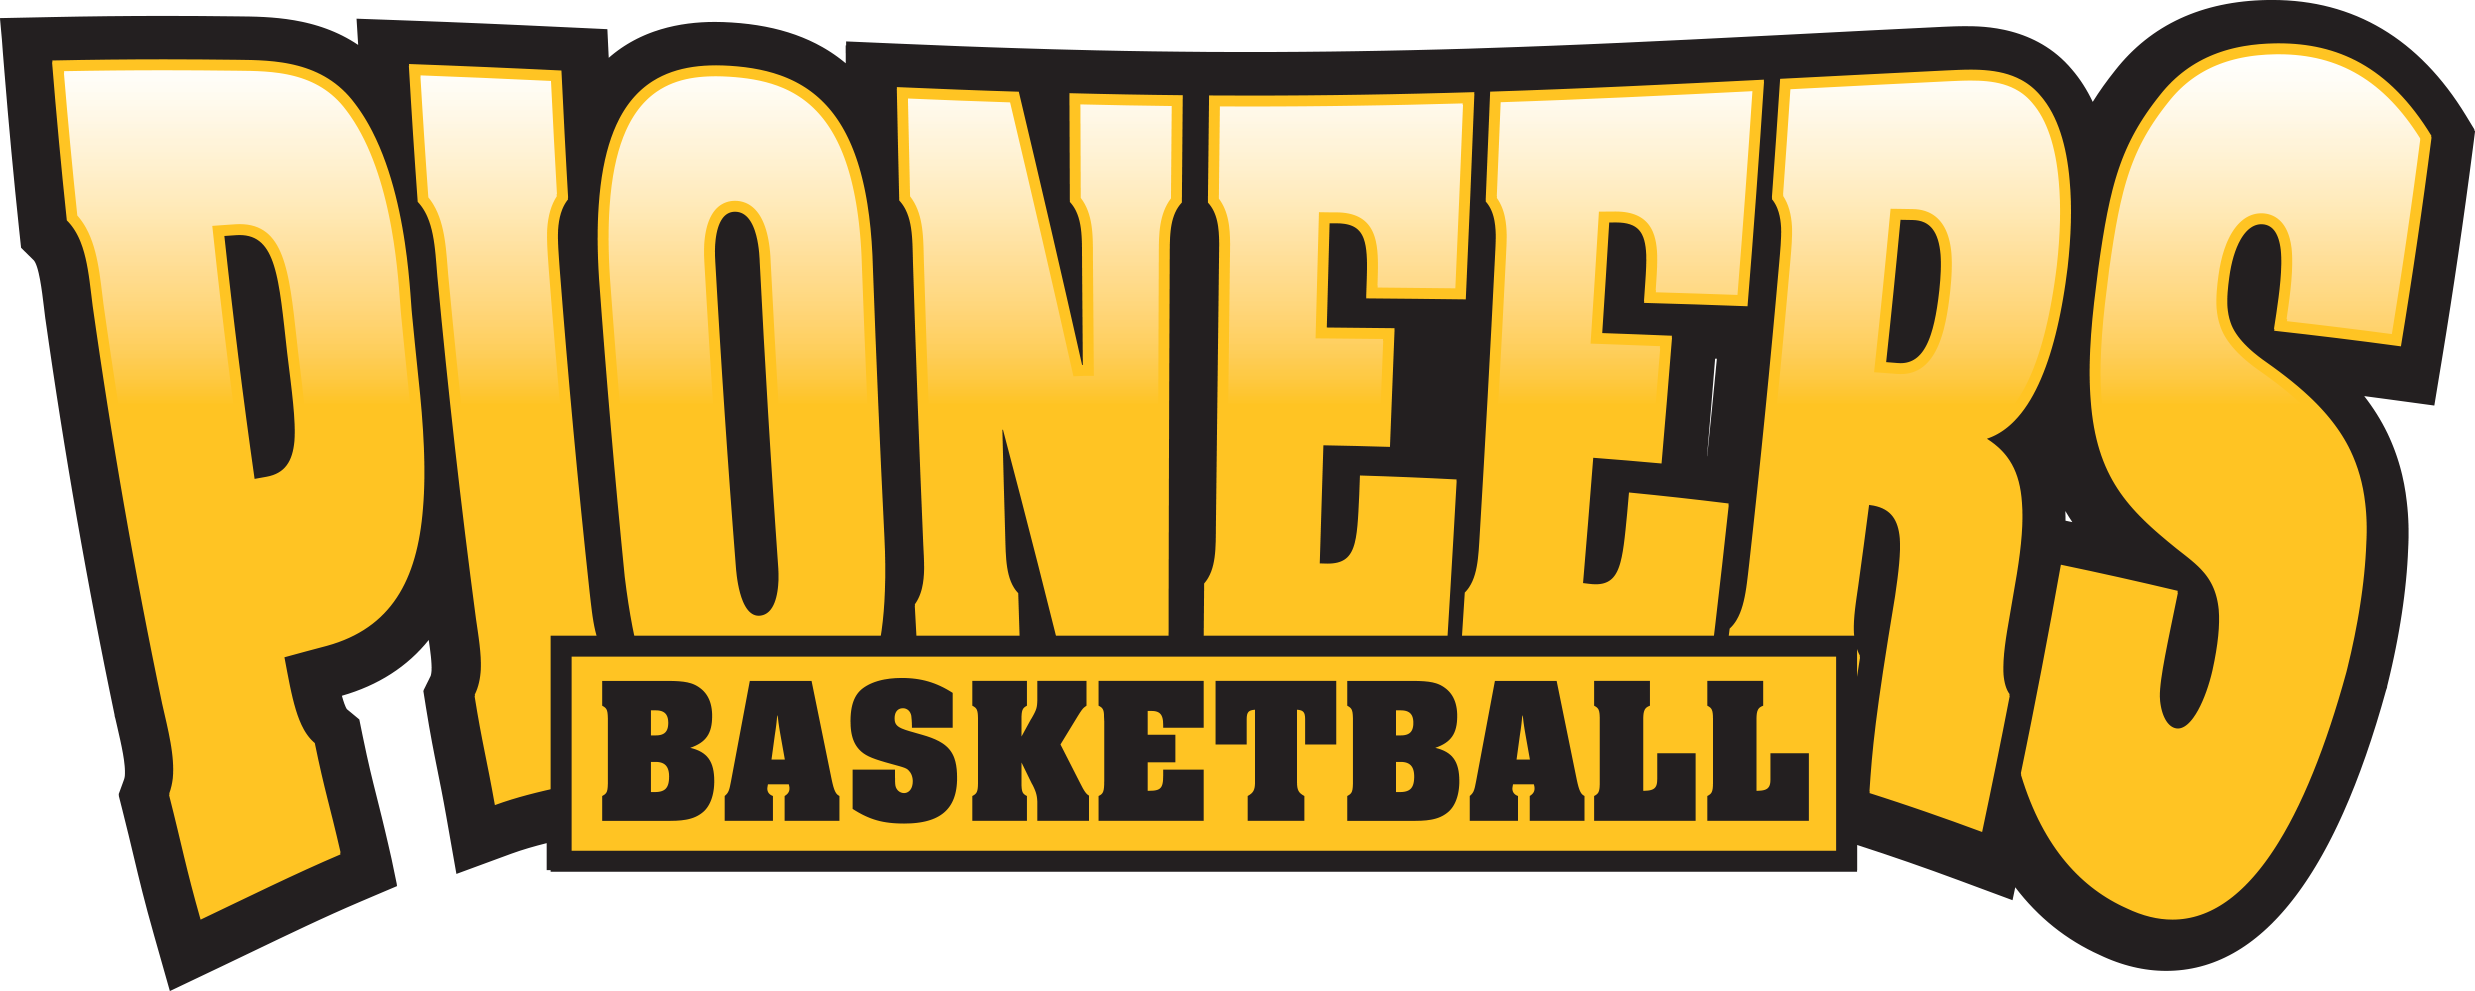 Pioneers_Basketball_Club_logo